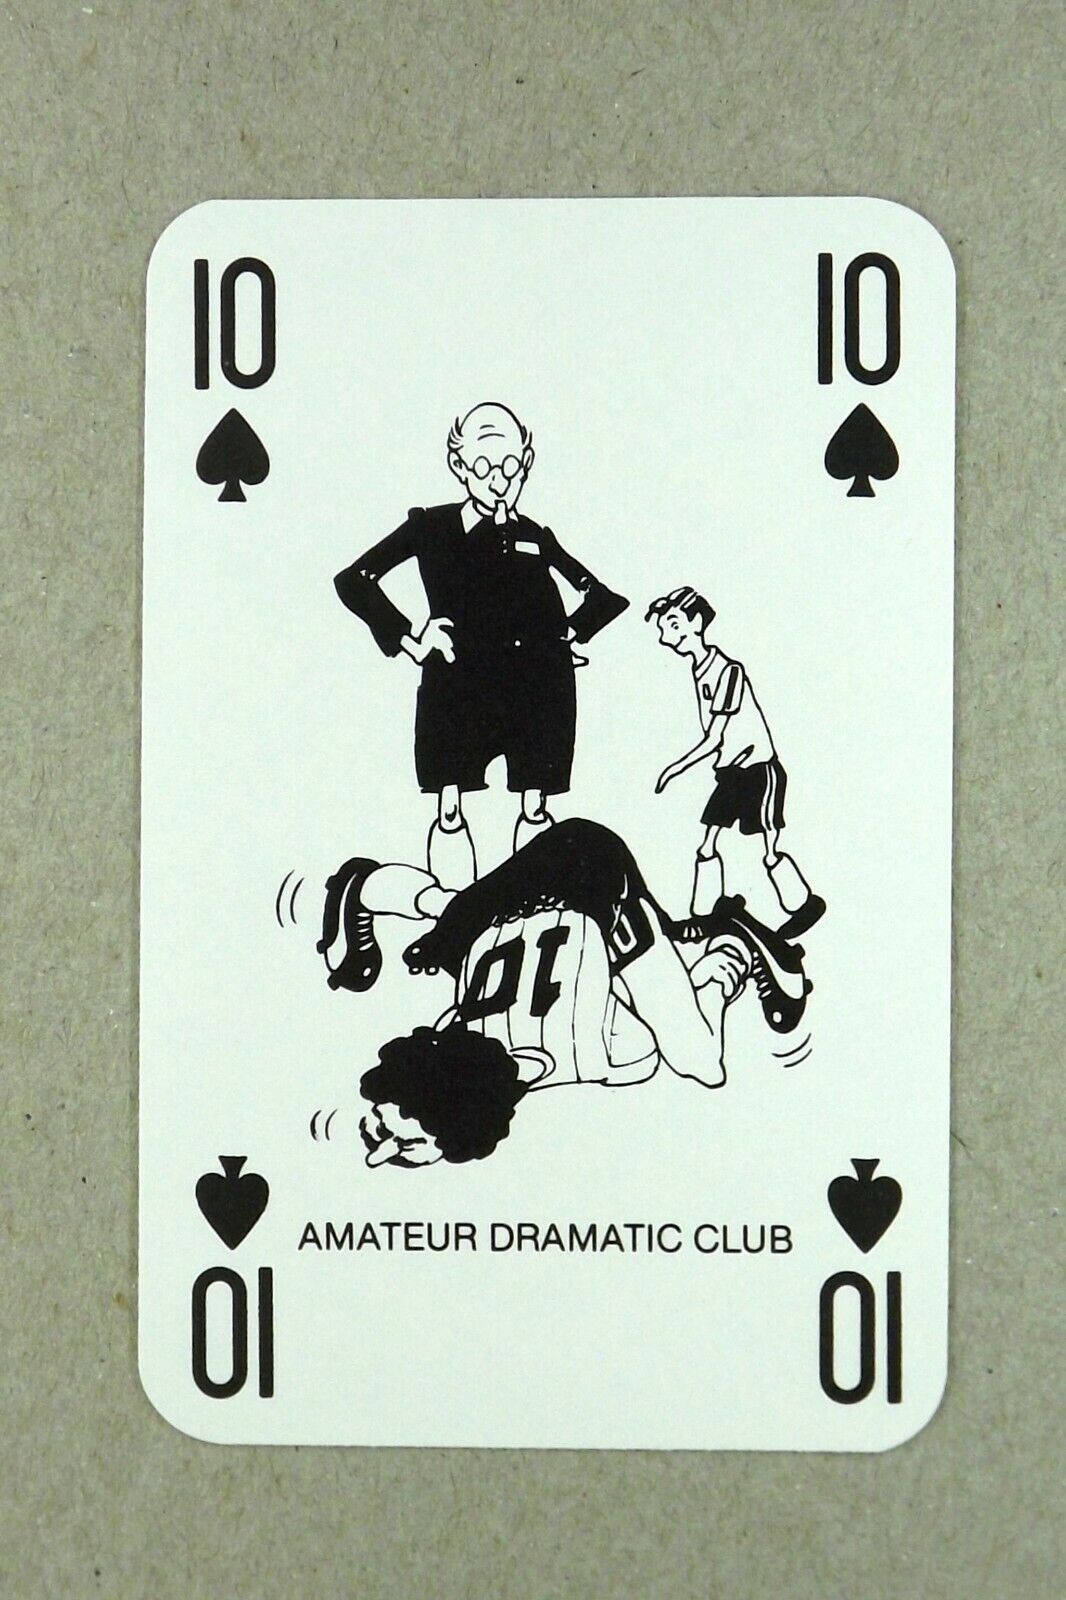 1 x playing card C&C Club Soft Drinks - Amateur dramatic club - 10 of Spades